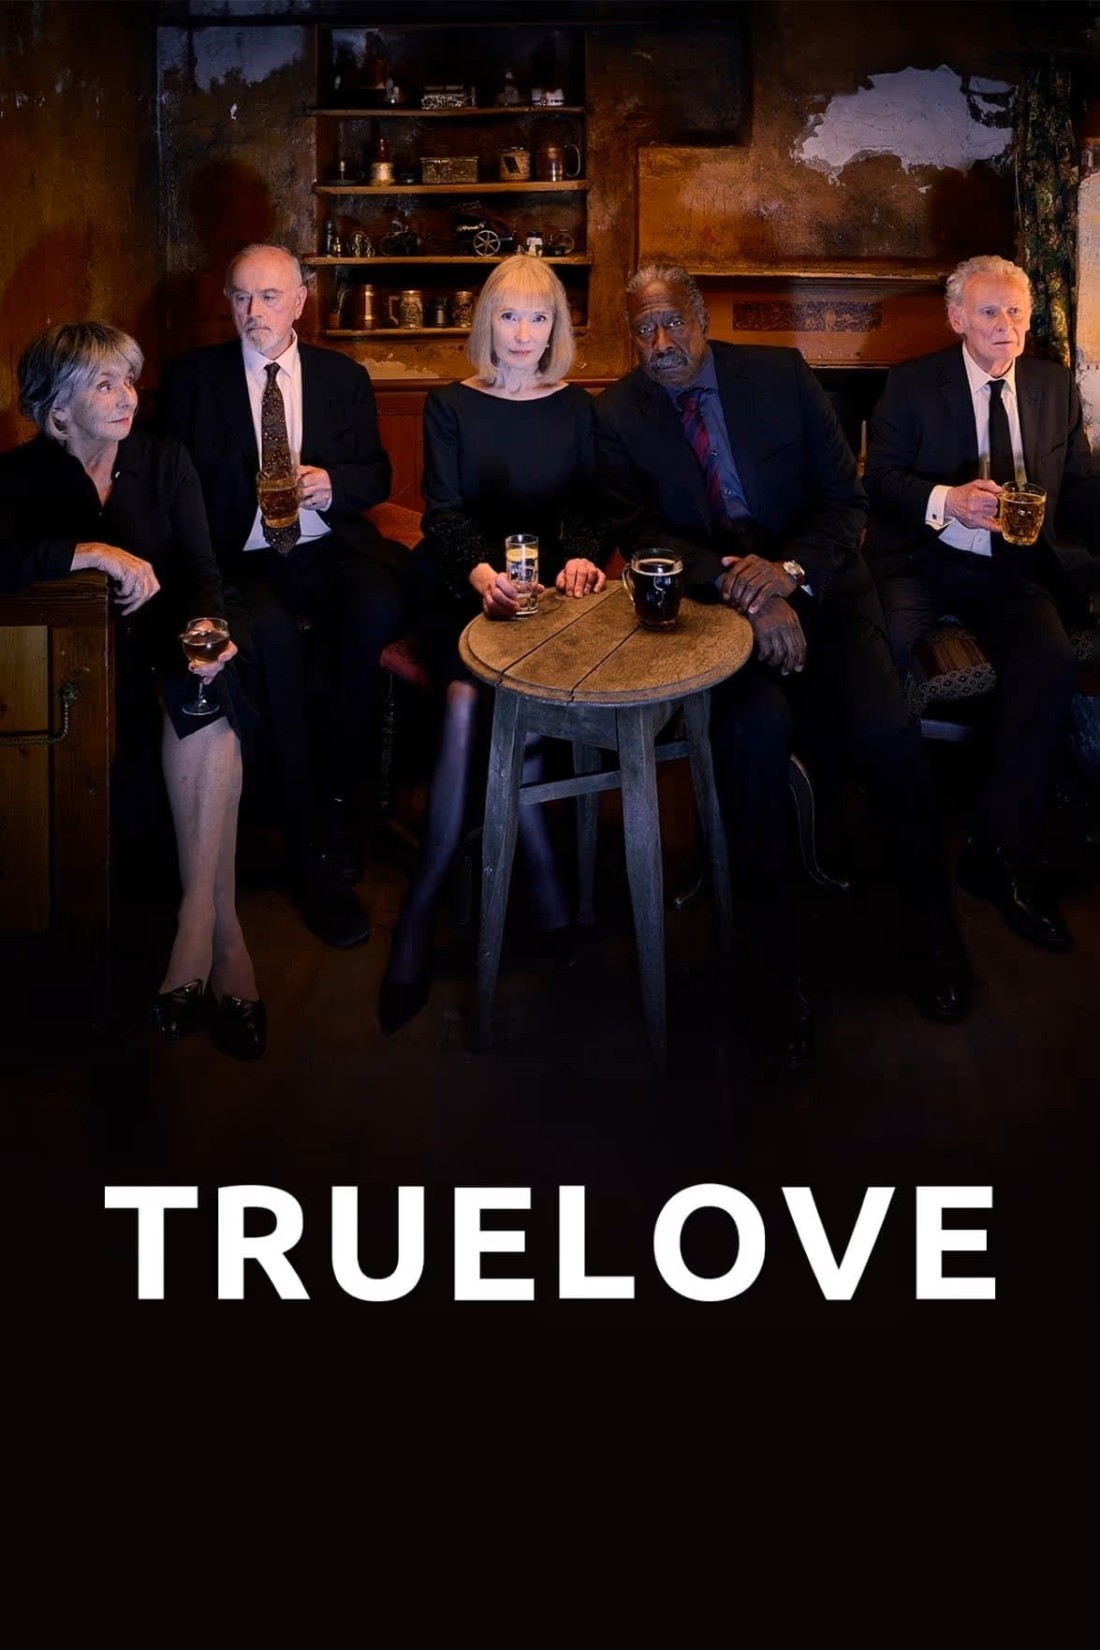 Truelove S01E04 [1080p/720p] WEB-DL (x264) A13e69c3cc507182822d0b6323a3cbaa